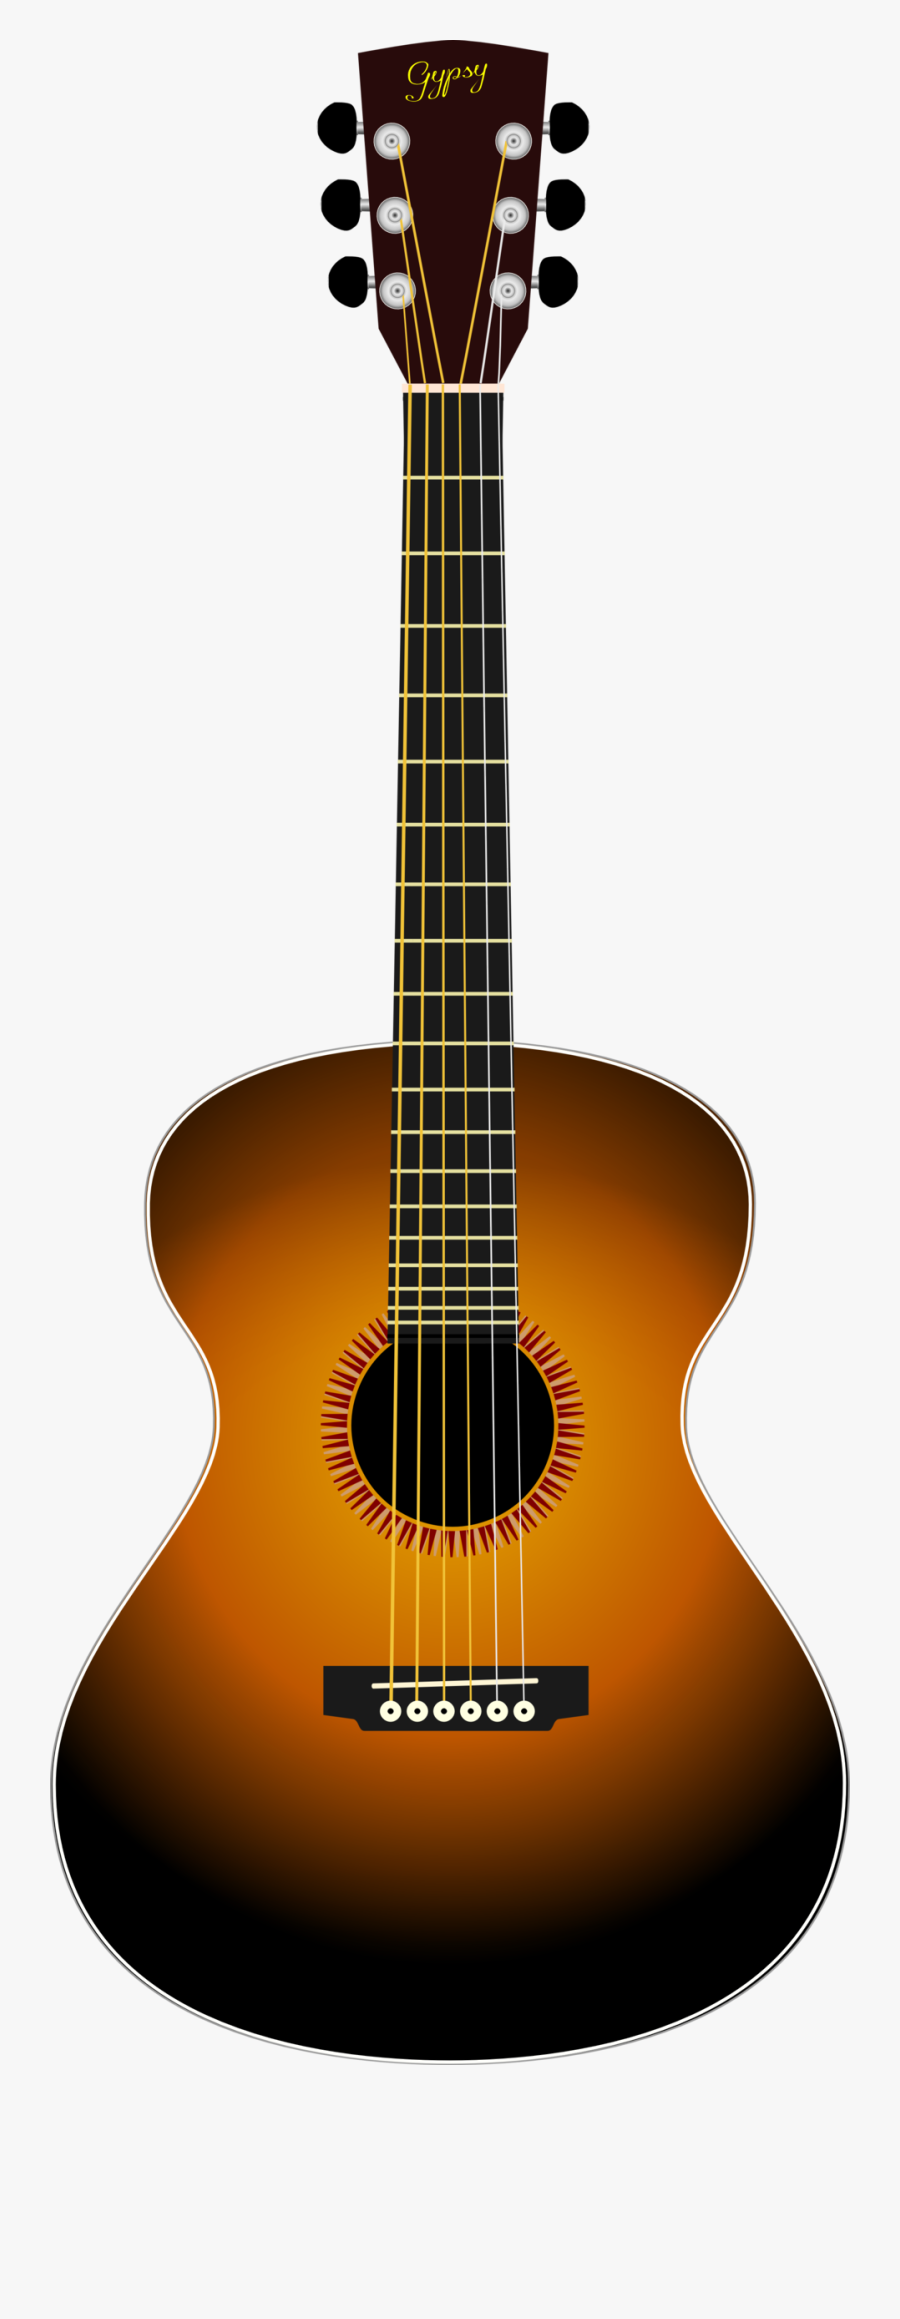 Guitar Sunburst Clipart Acoustic Free Images Transparent - Acoustic Guitar Clipart, Transparent Clipart